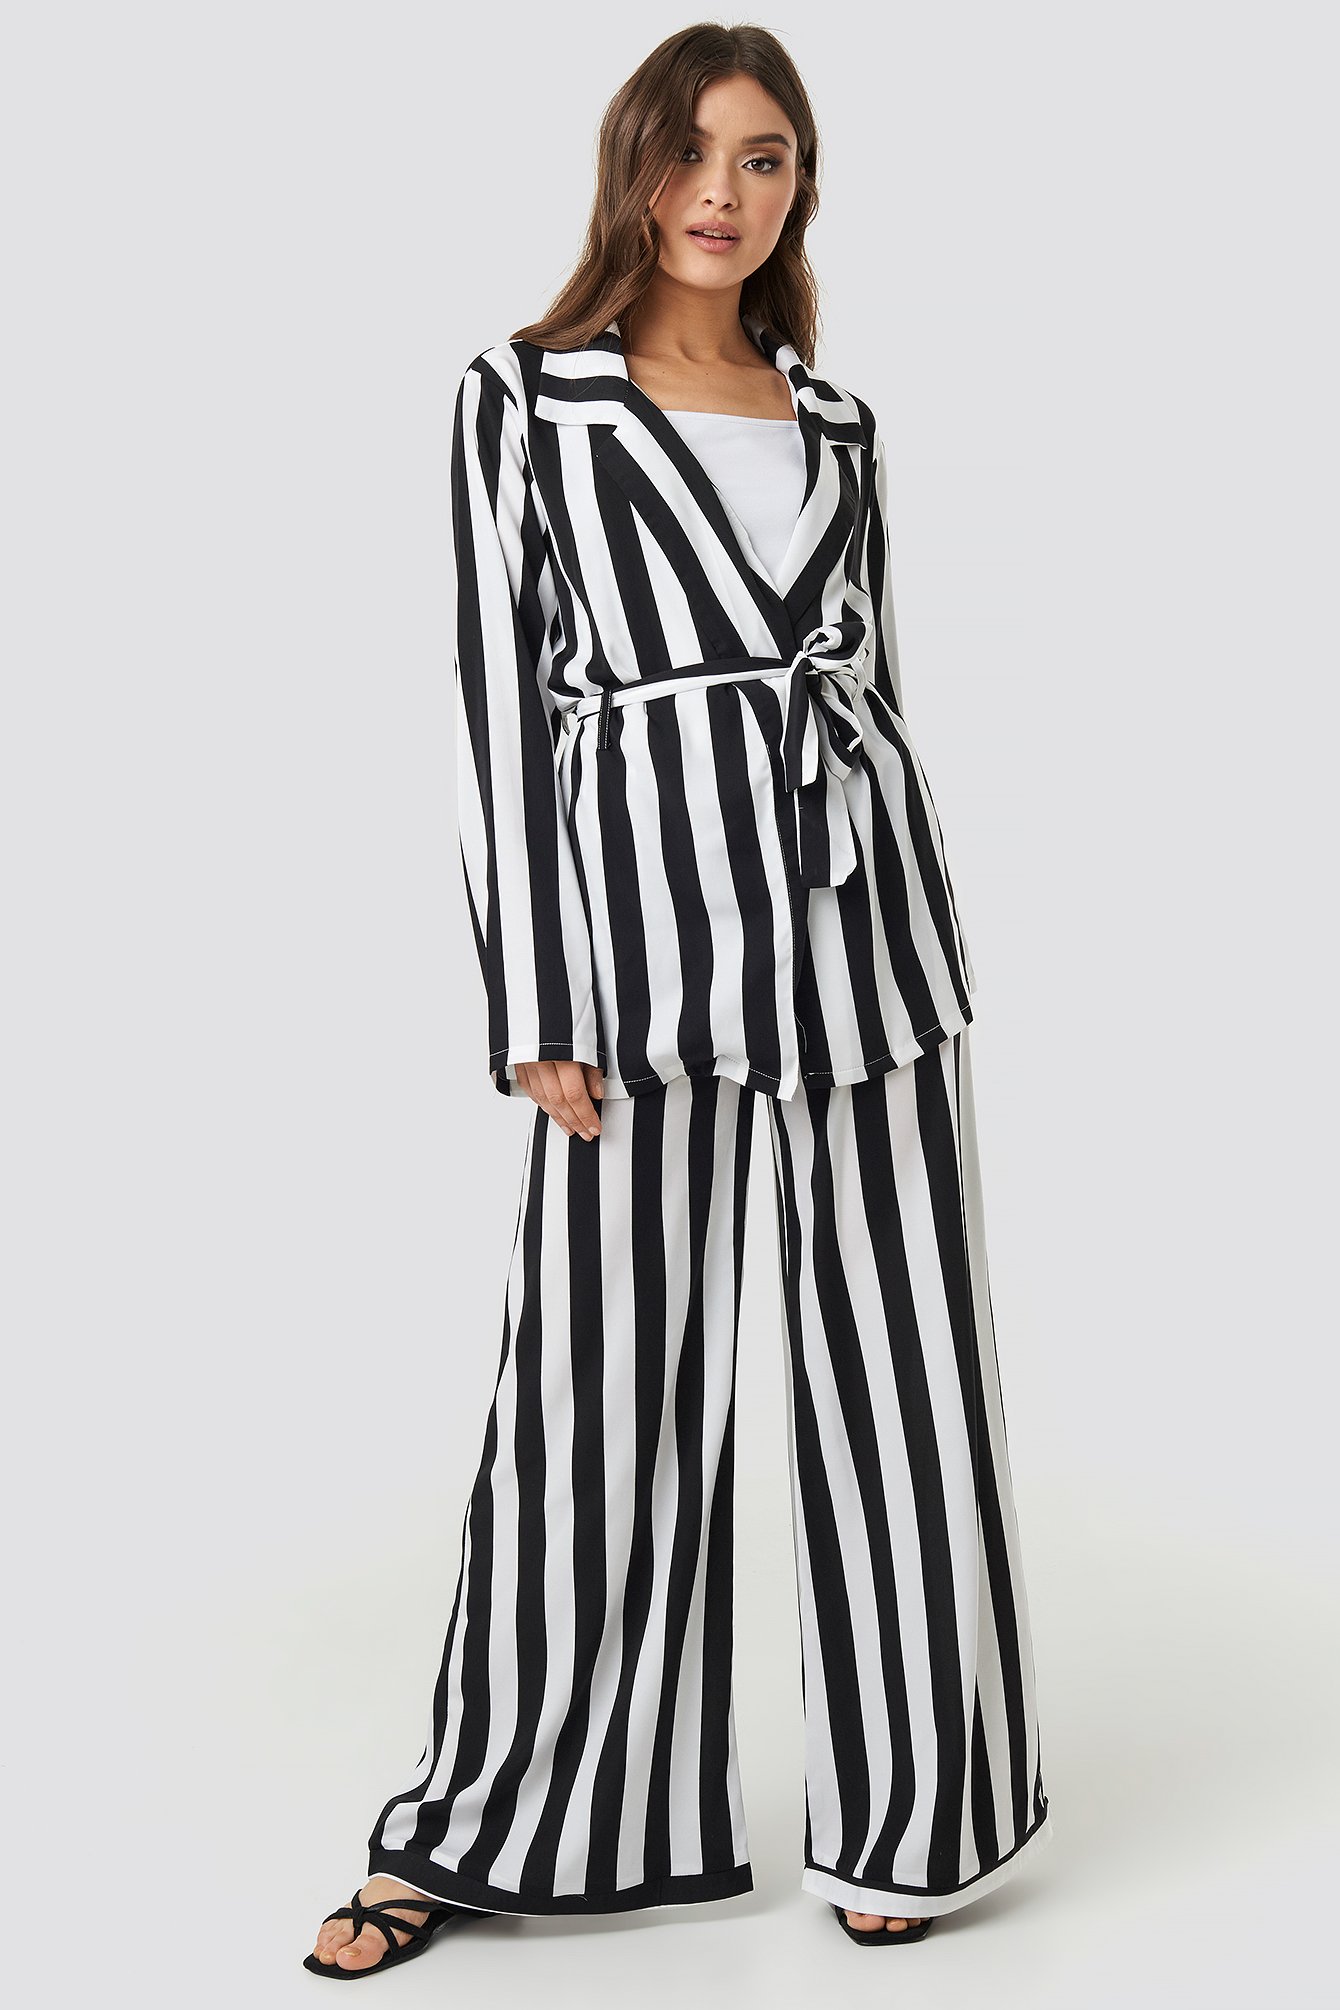 Black/White Stripe Luźne Spodnie W Paski